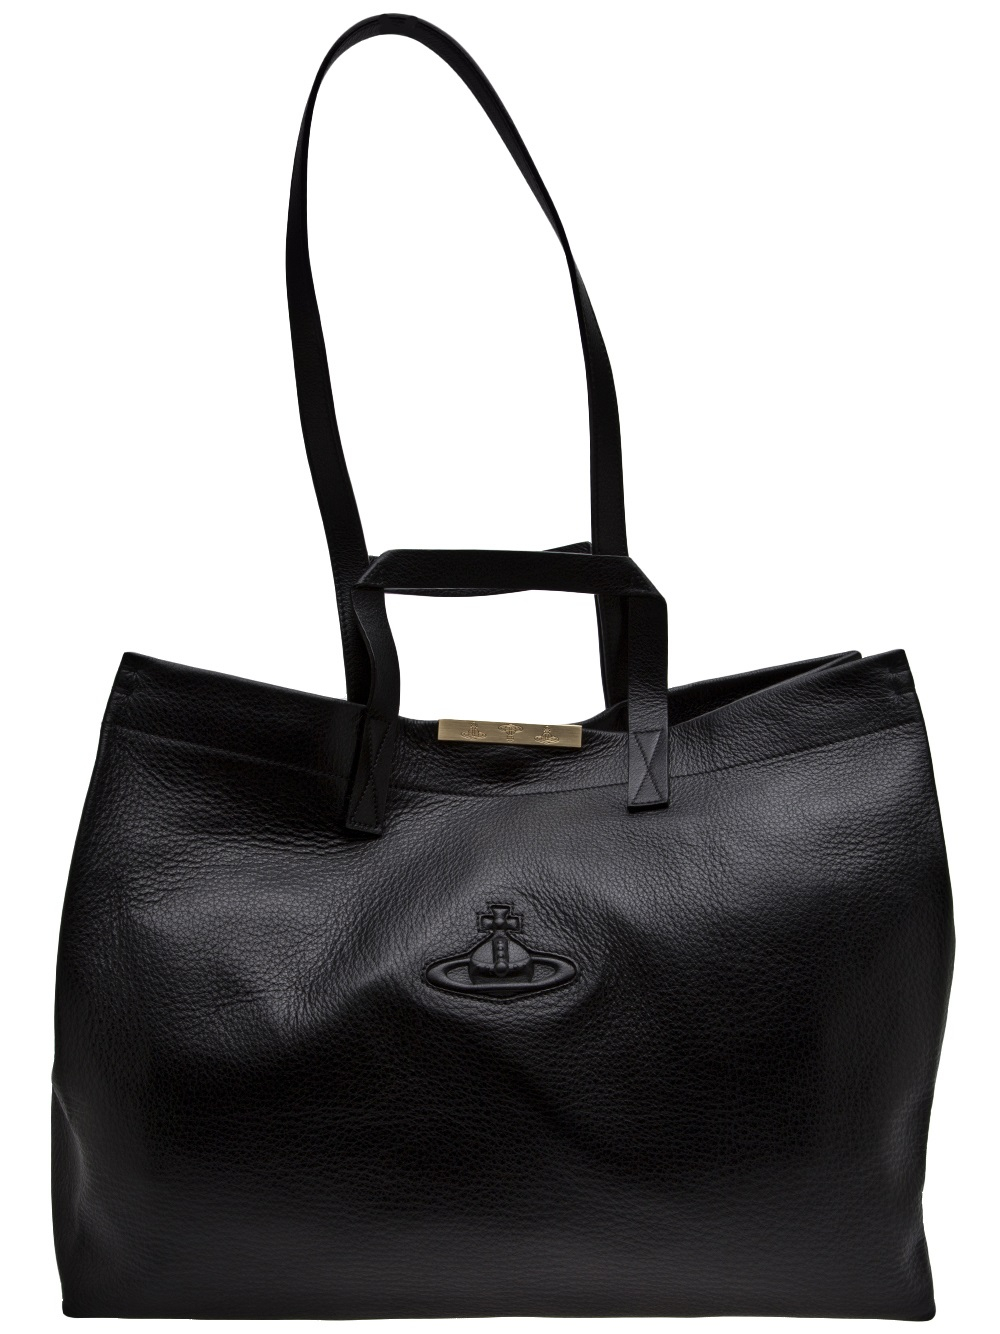 Vivienne Westwood Large Shopper Bag in Black | Lyst